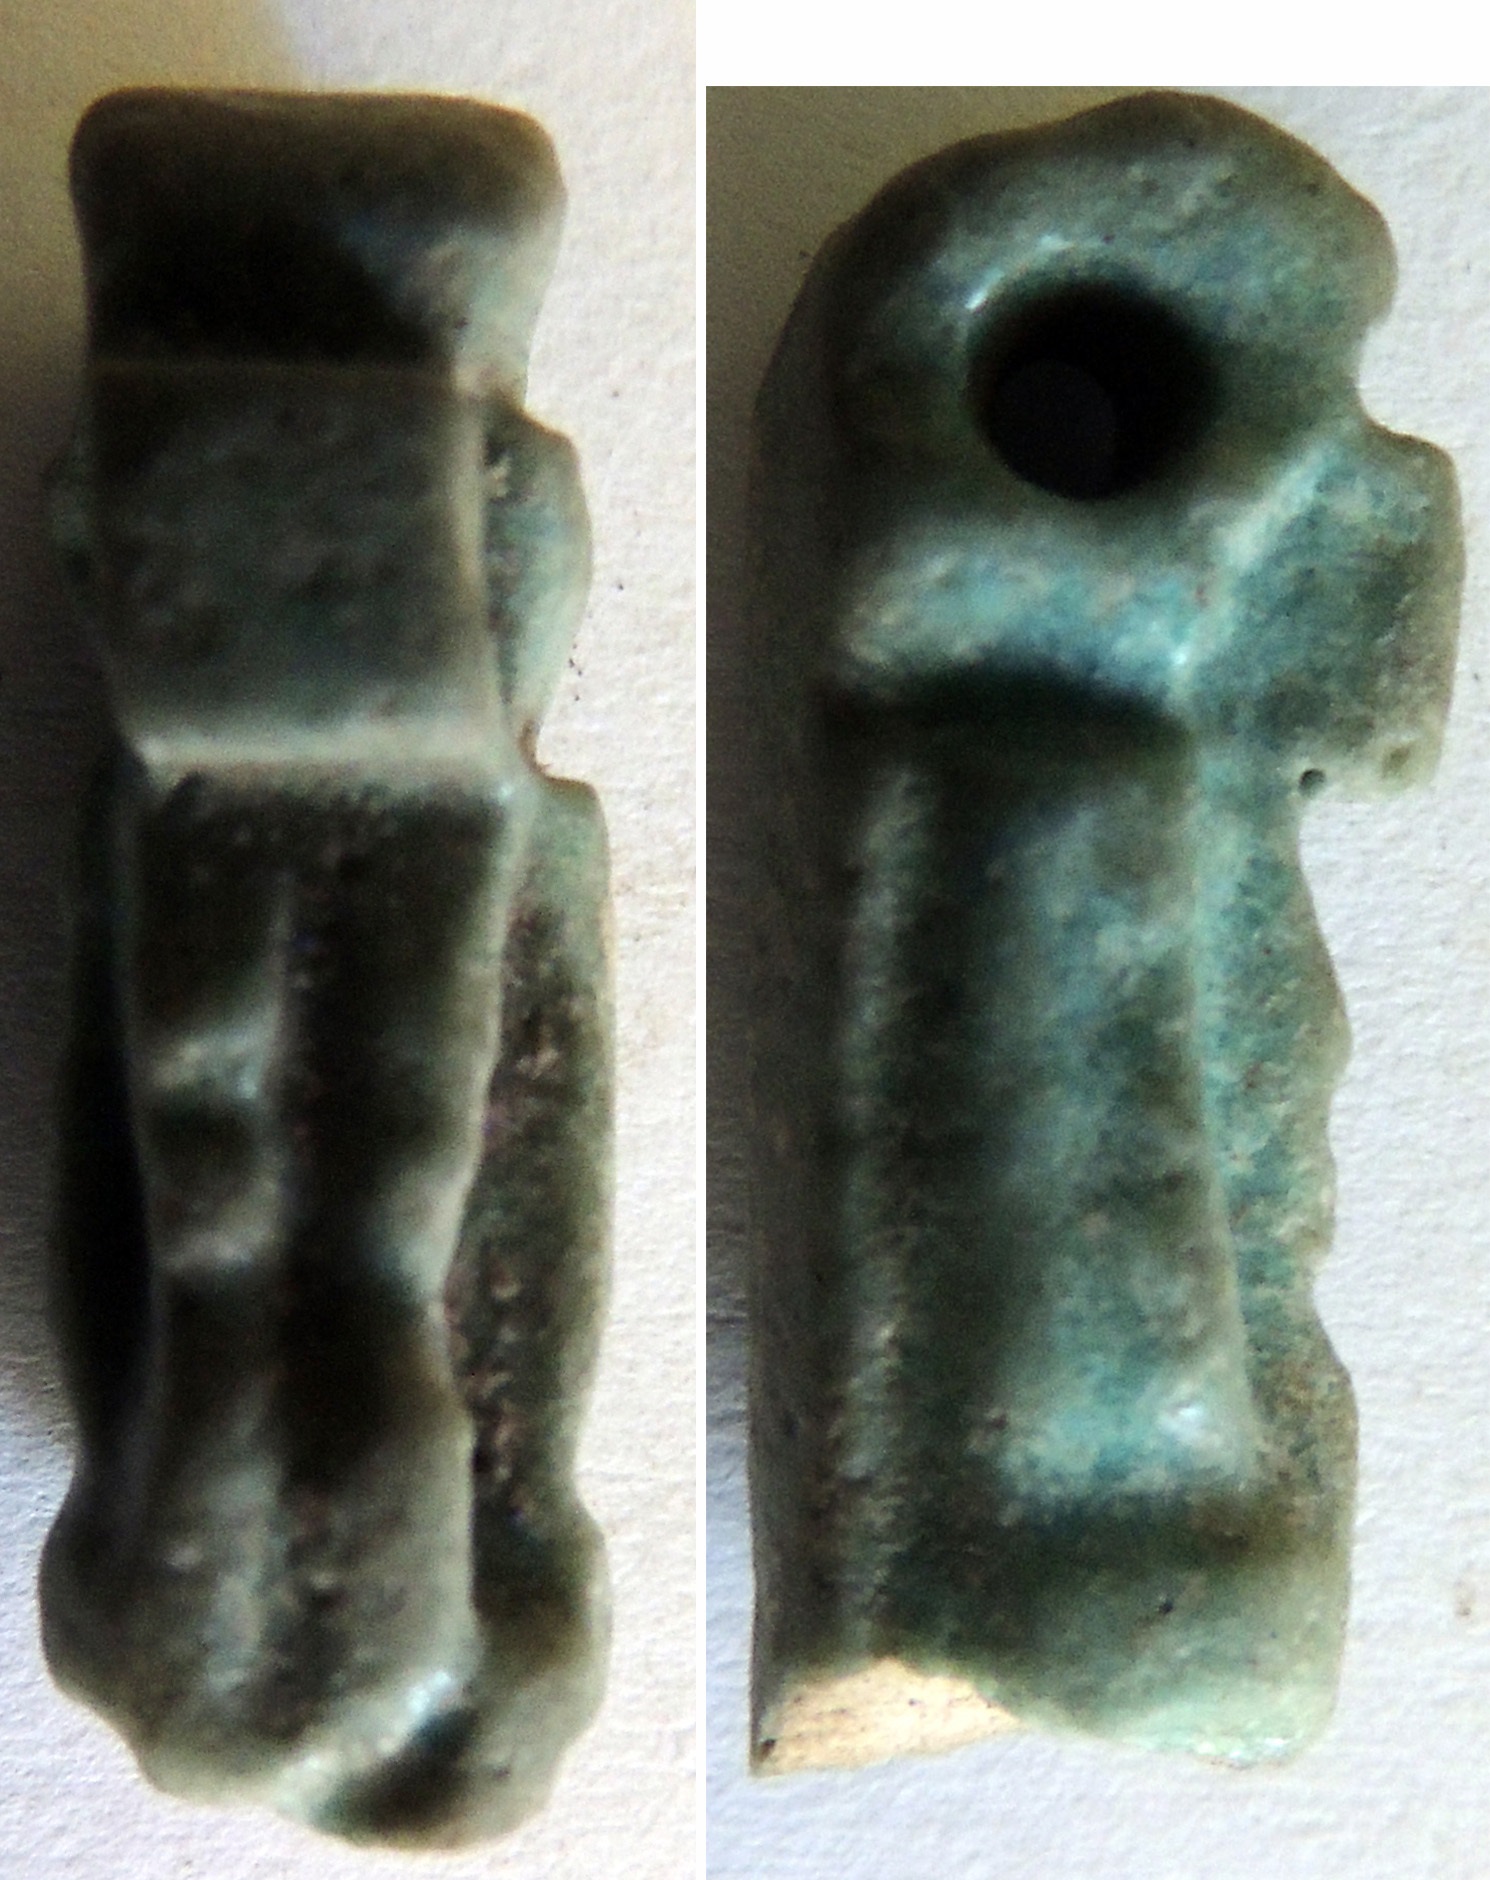 Thoeris (amuleto) (SECOLI/ VII a.C)